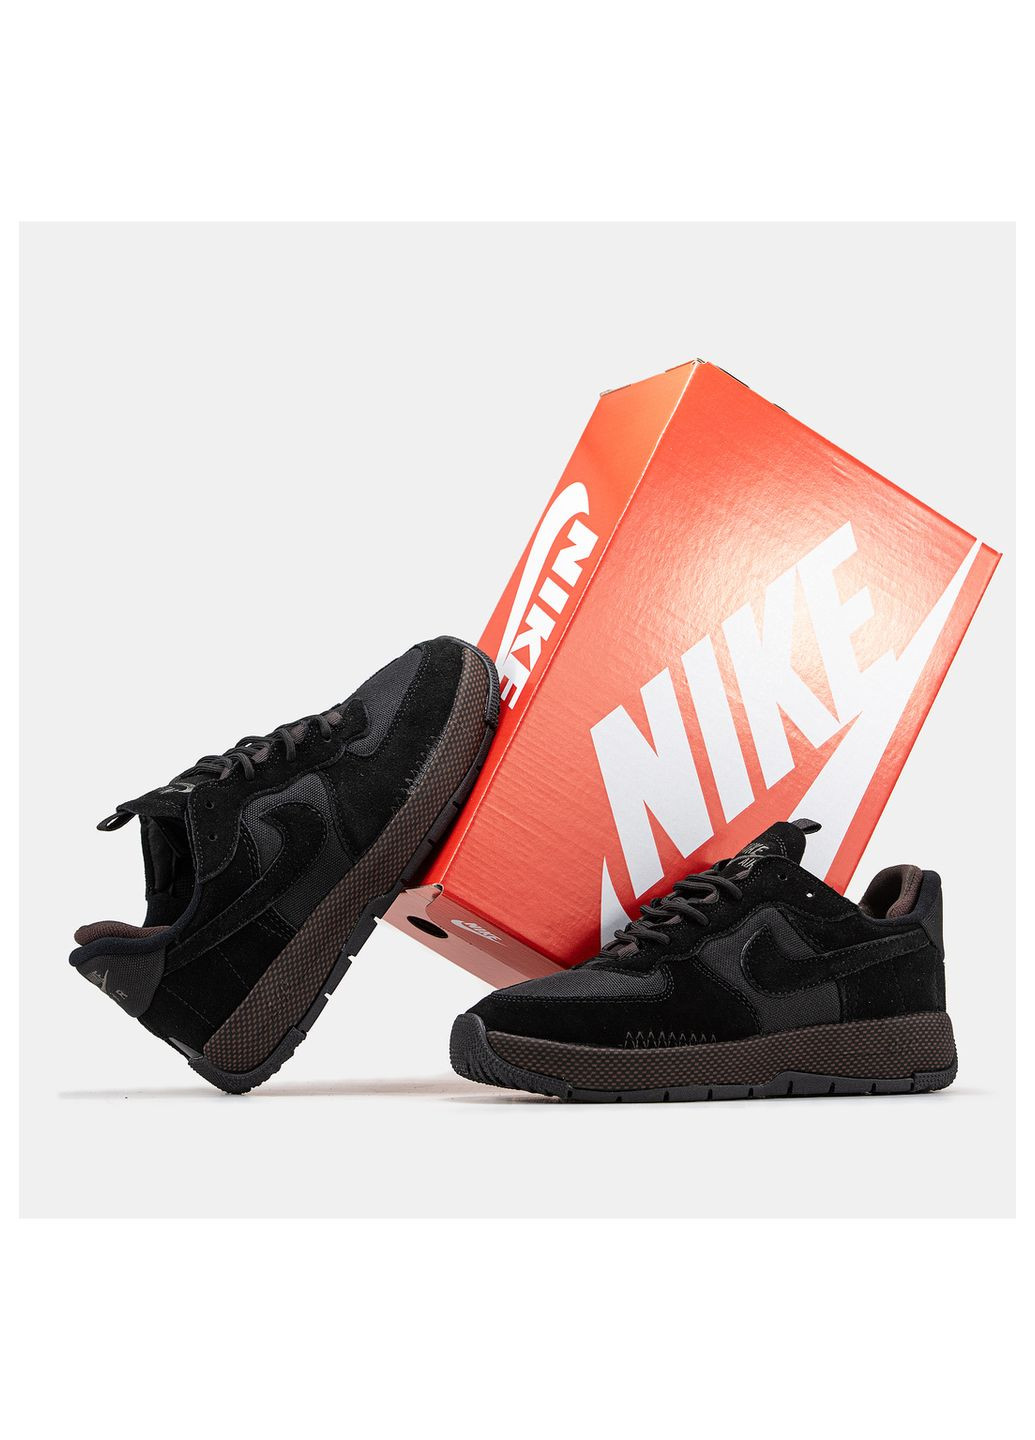 Темно-коричневые демисезонные кроссовки мужские Nike Air Force 1 Wild